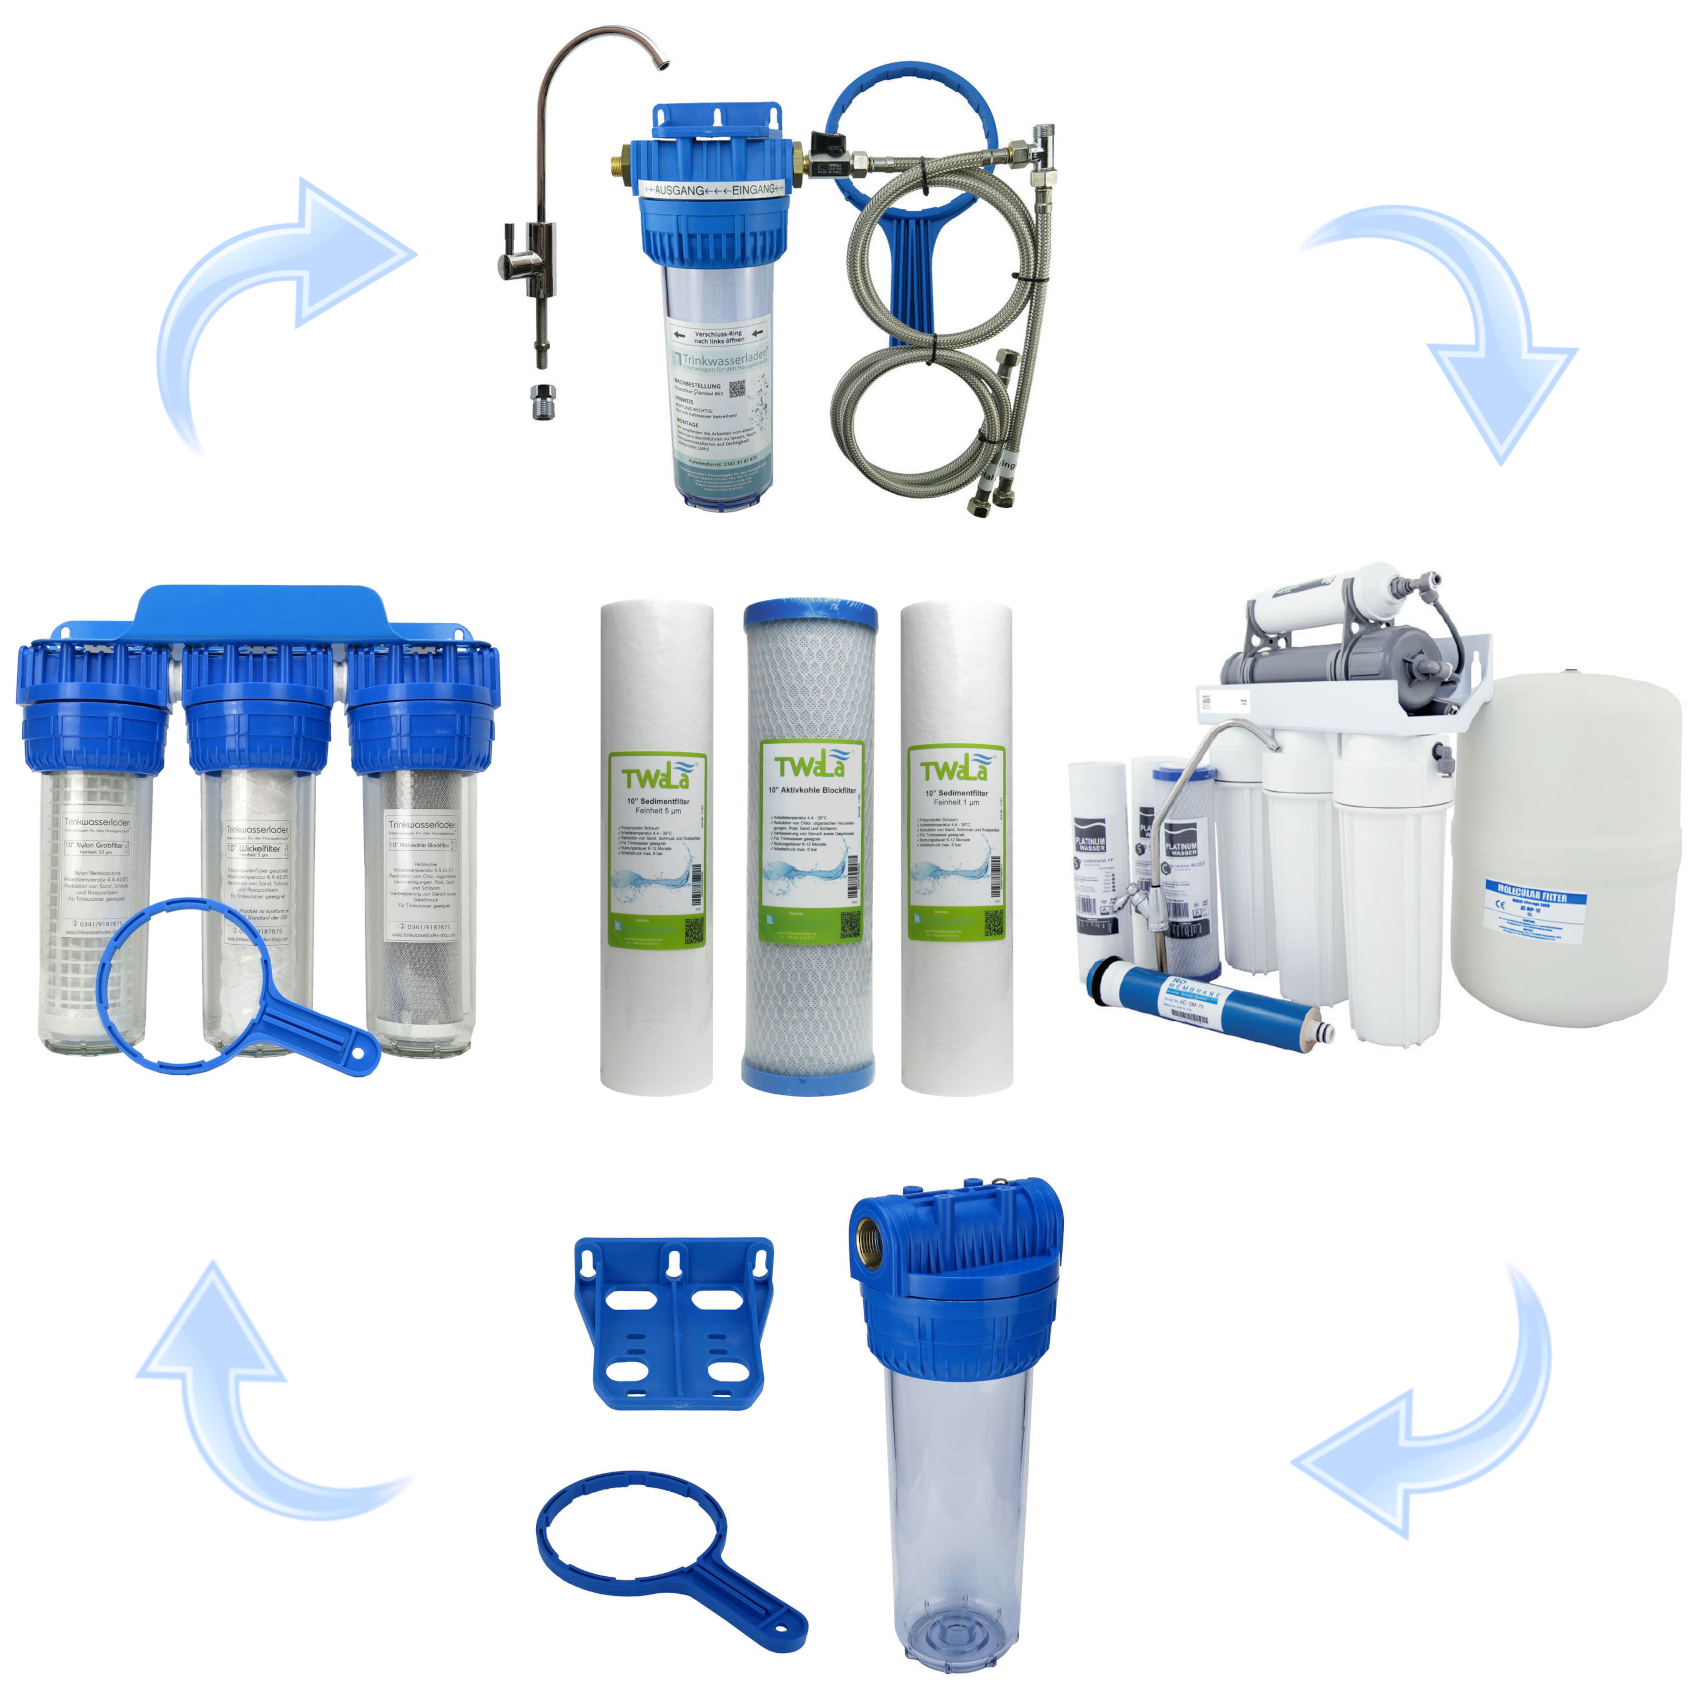 1 Jahr Set 6-teilig Ersatzfilter 10″ Umkehrosmoseanlage RO Sedimentfilter  und Aktivkohleblockfilter Wasserfilter – TWaLa Wasserfilter